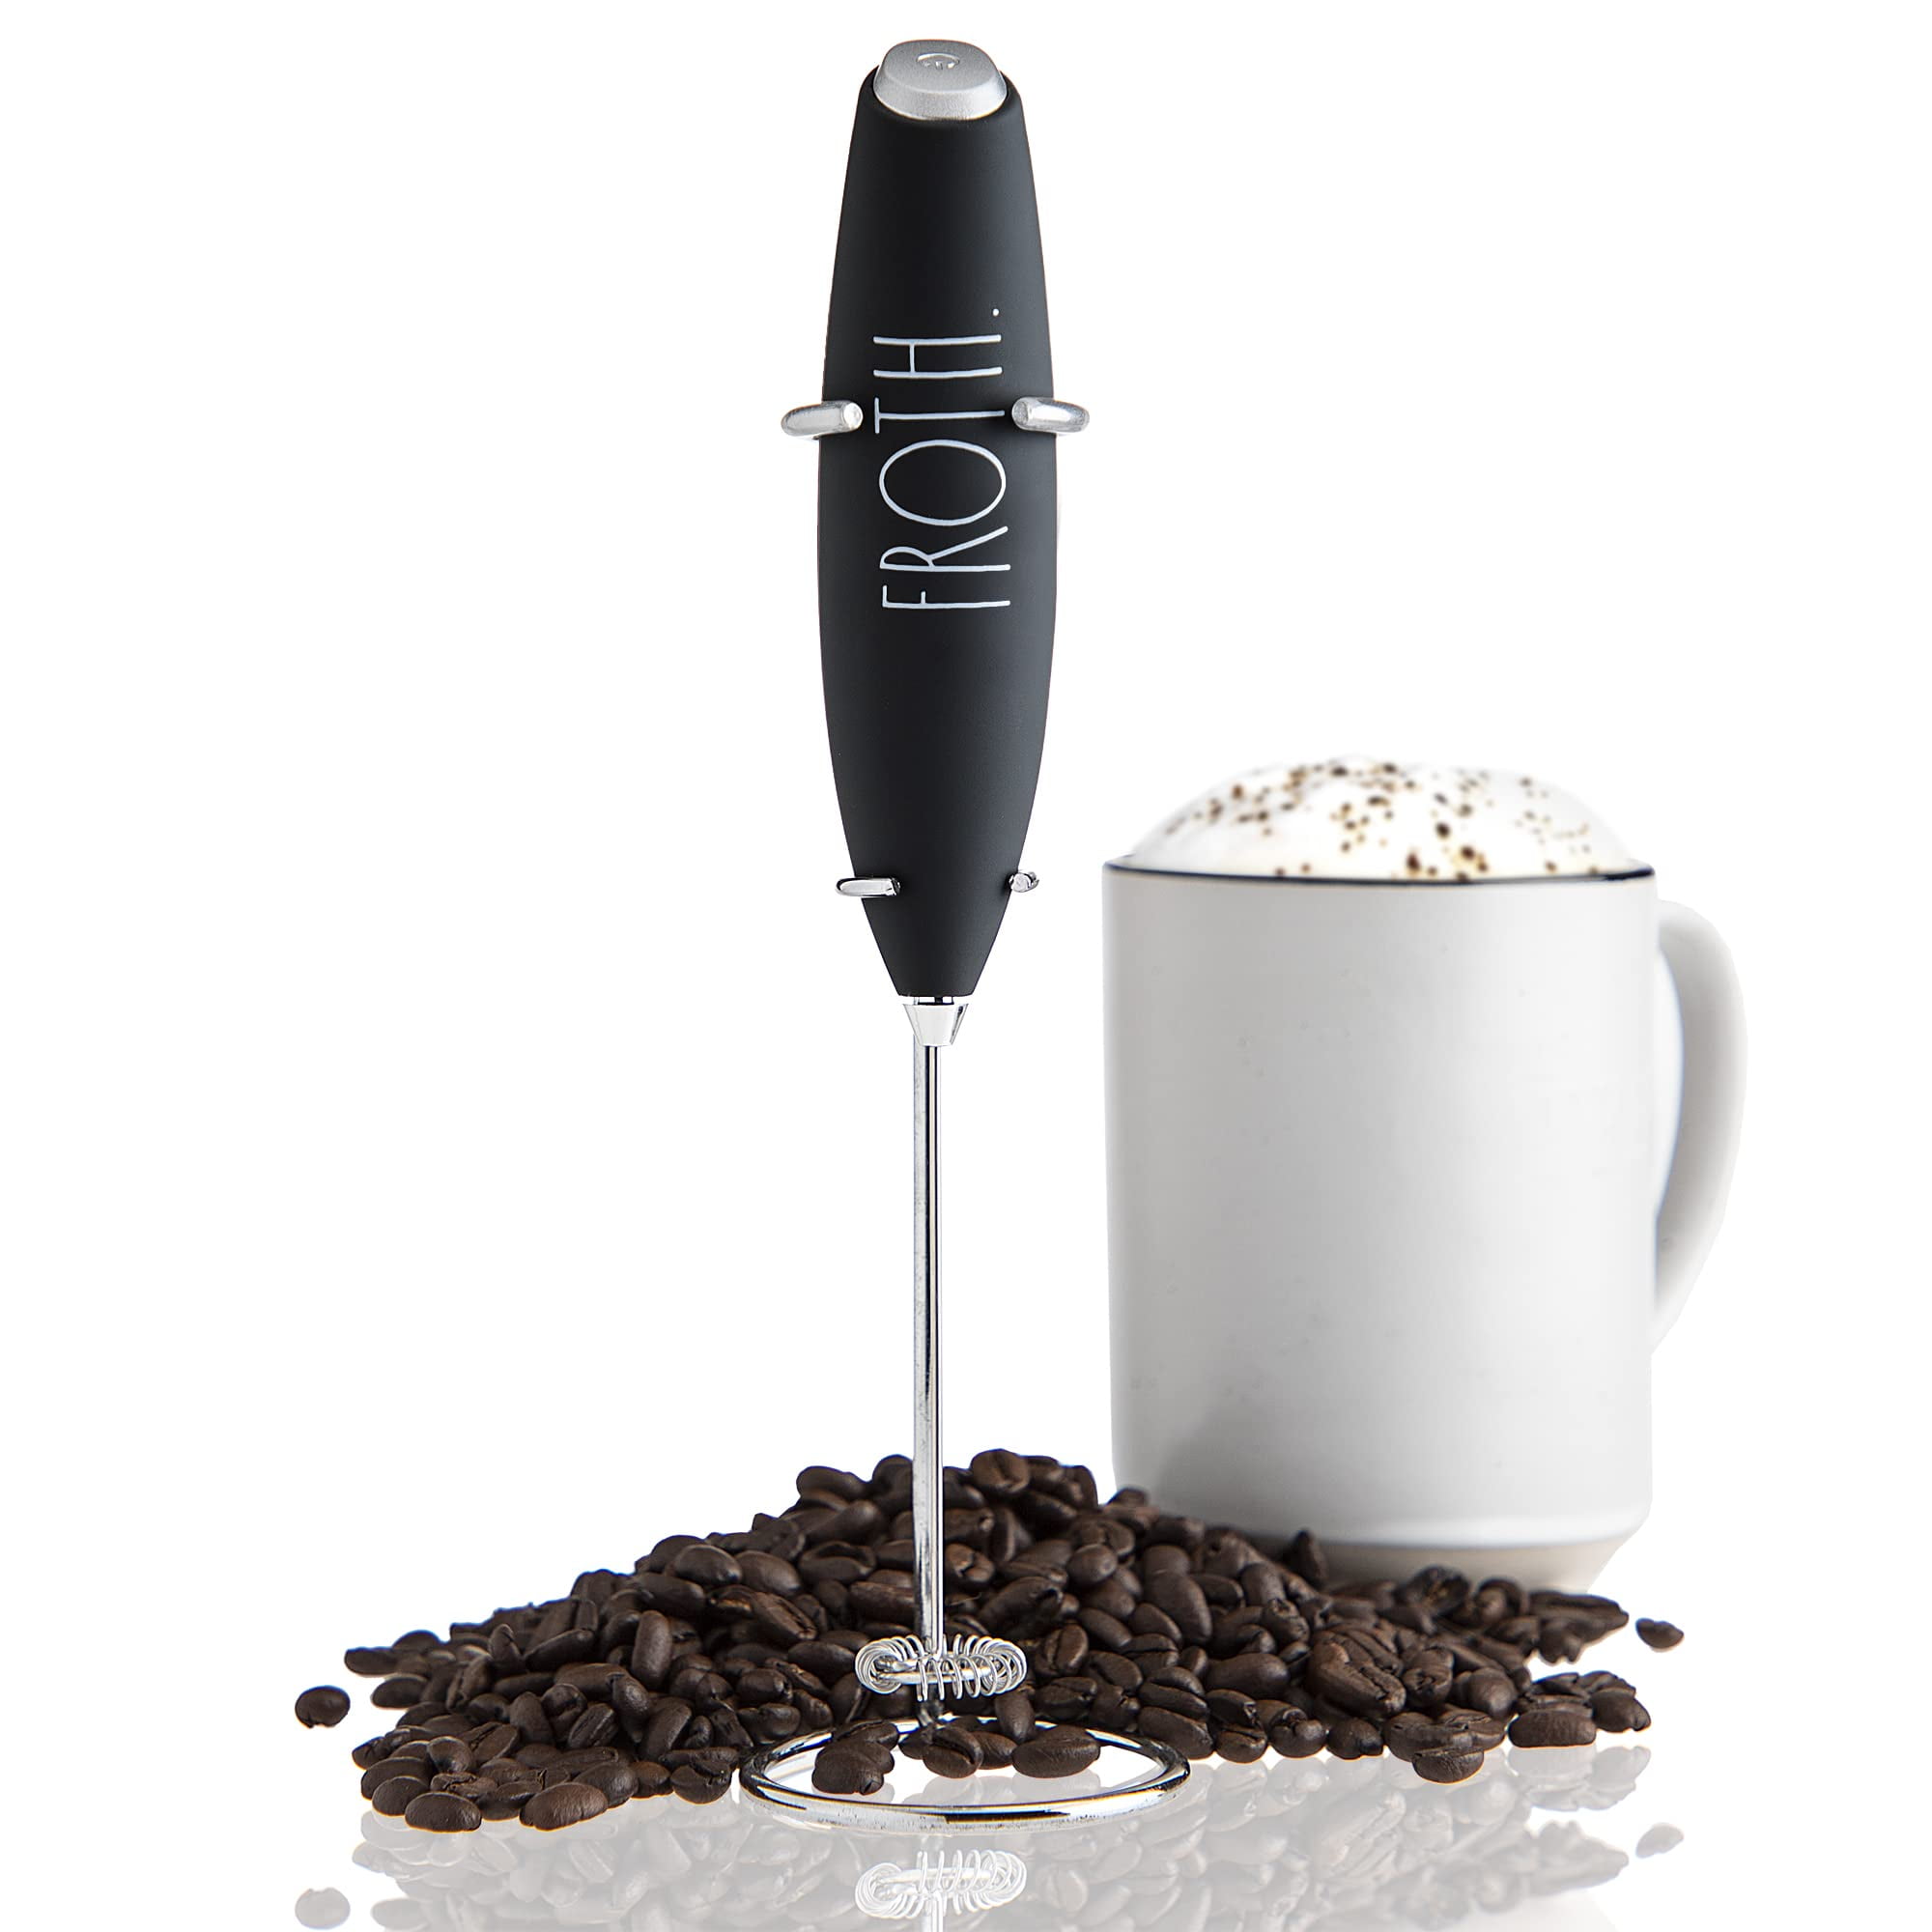 Appcloud Hand Blender Mixer Froth Whisker Latte Maker for Milk